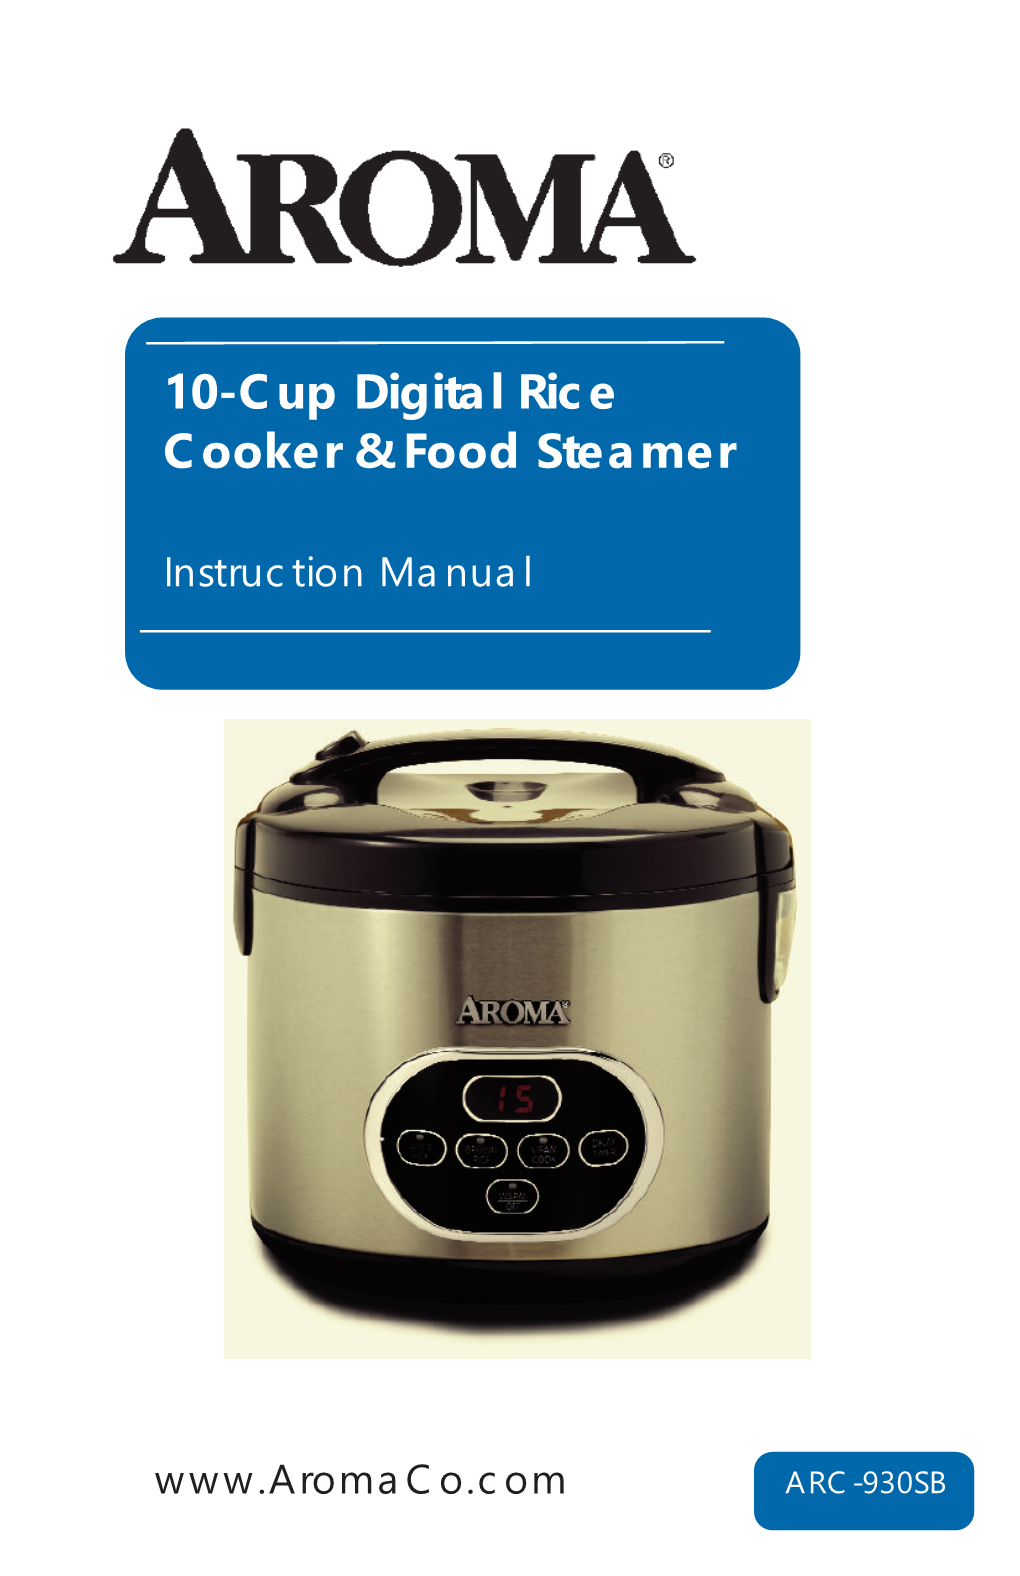 Arro Digit 10-Cup Digital Rice Cooker & Food Steamer